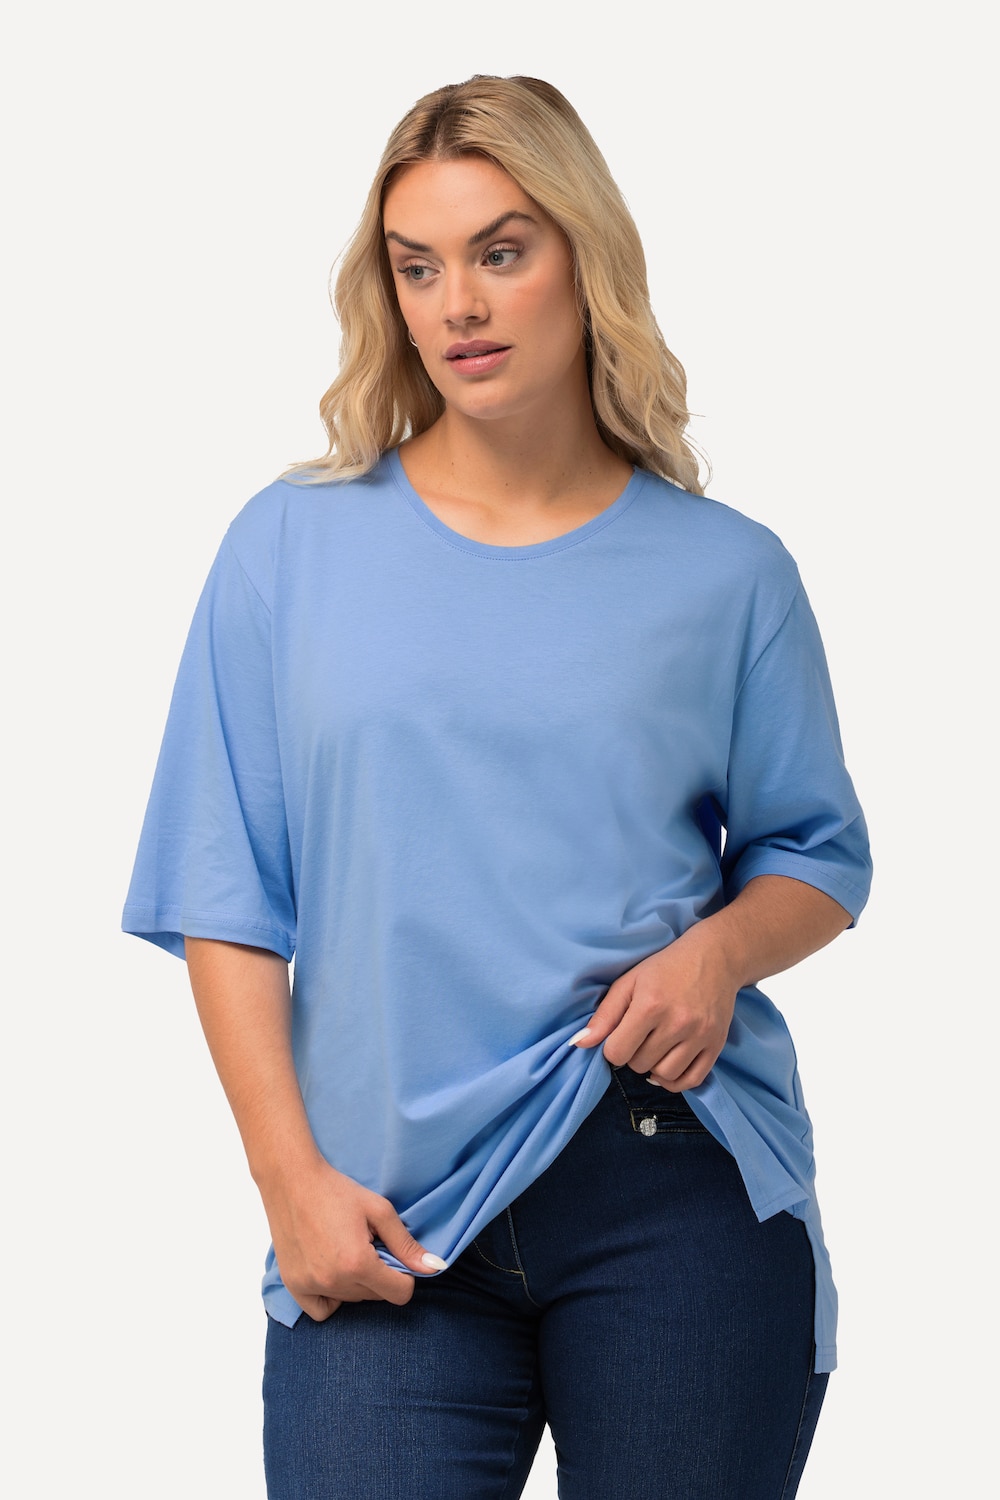 Grote Maten T-Shirt, Dames, blauw, Maat: 54/56, Katoen/Viscose, Ulla Popken